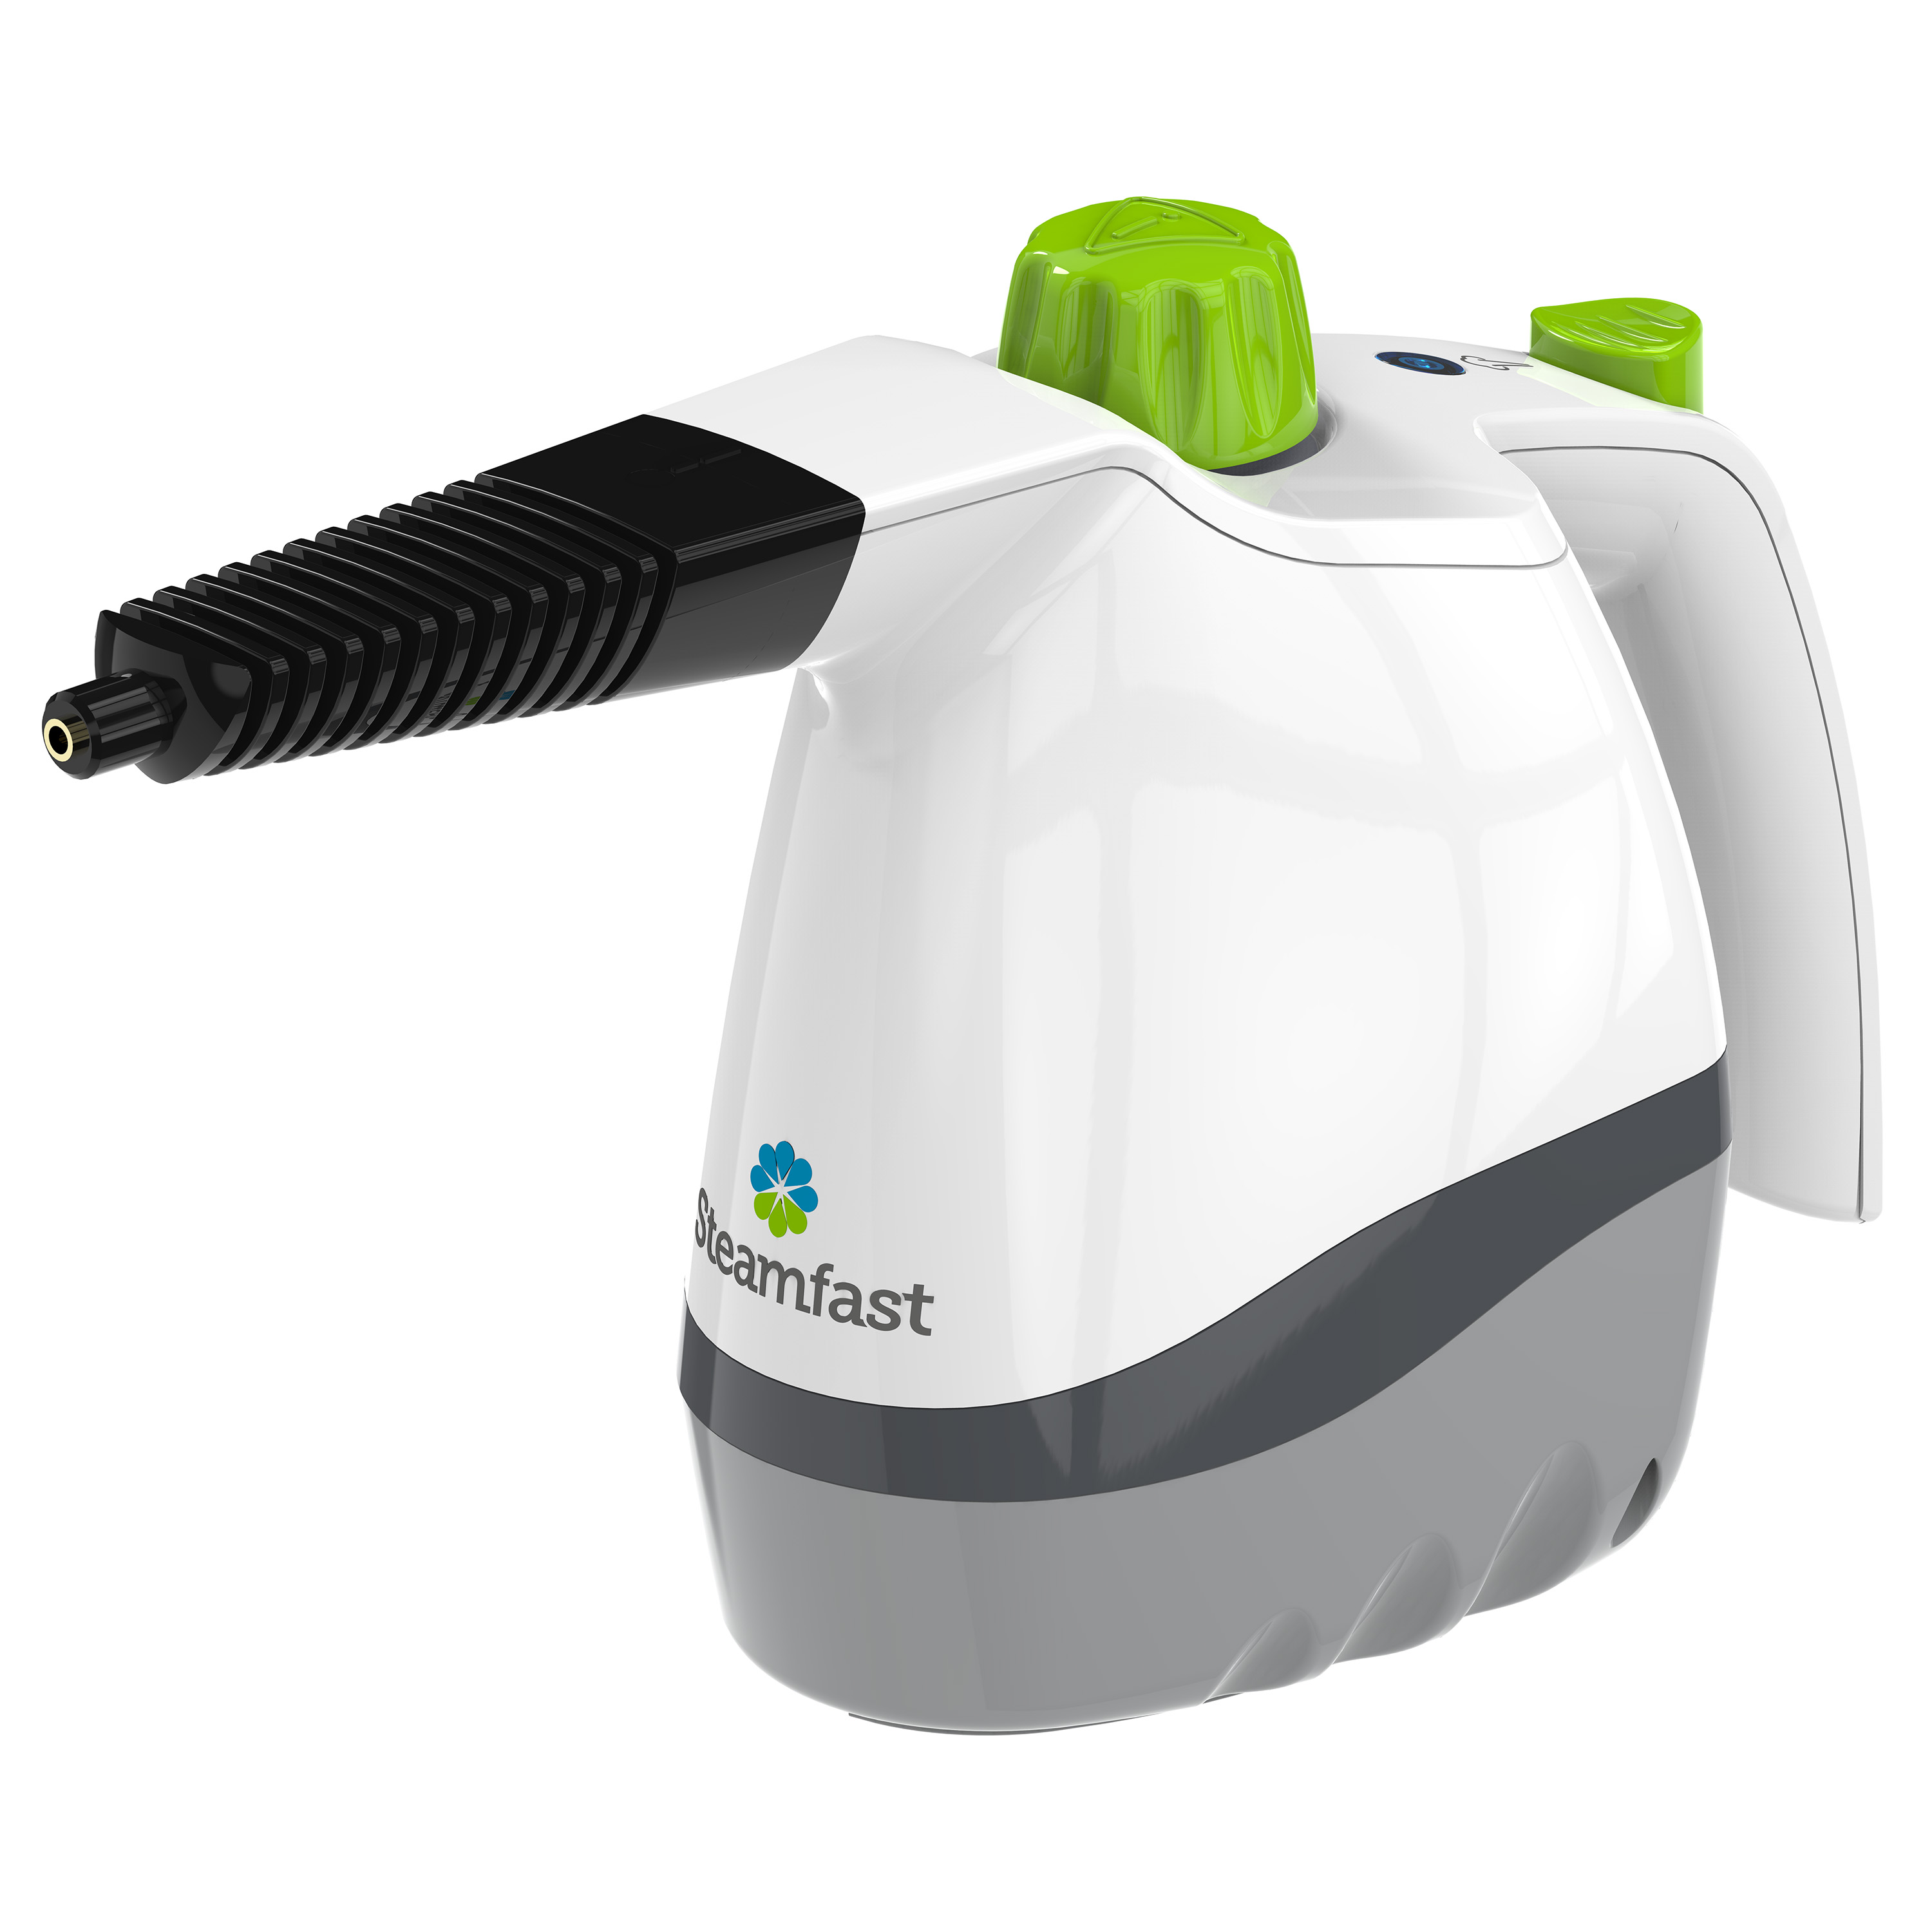 Steamfast - Handheld Steam Cleaner - White